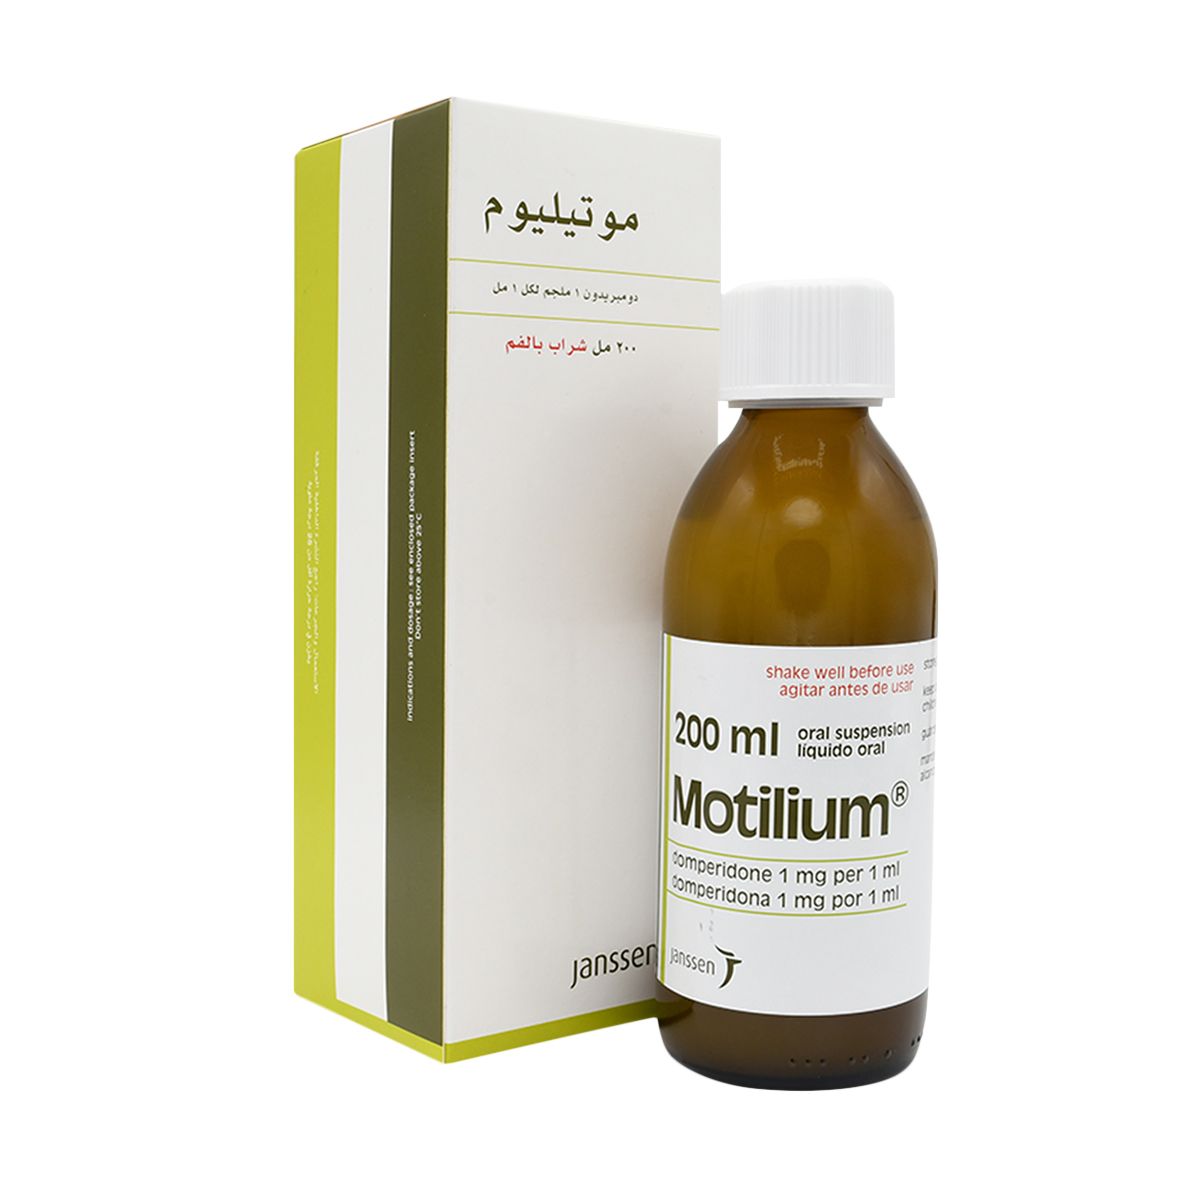 MOTILIUM Motilium Syrup 200ml